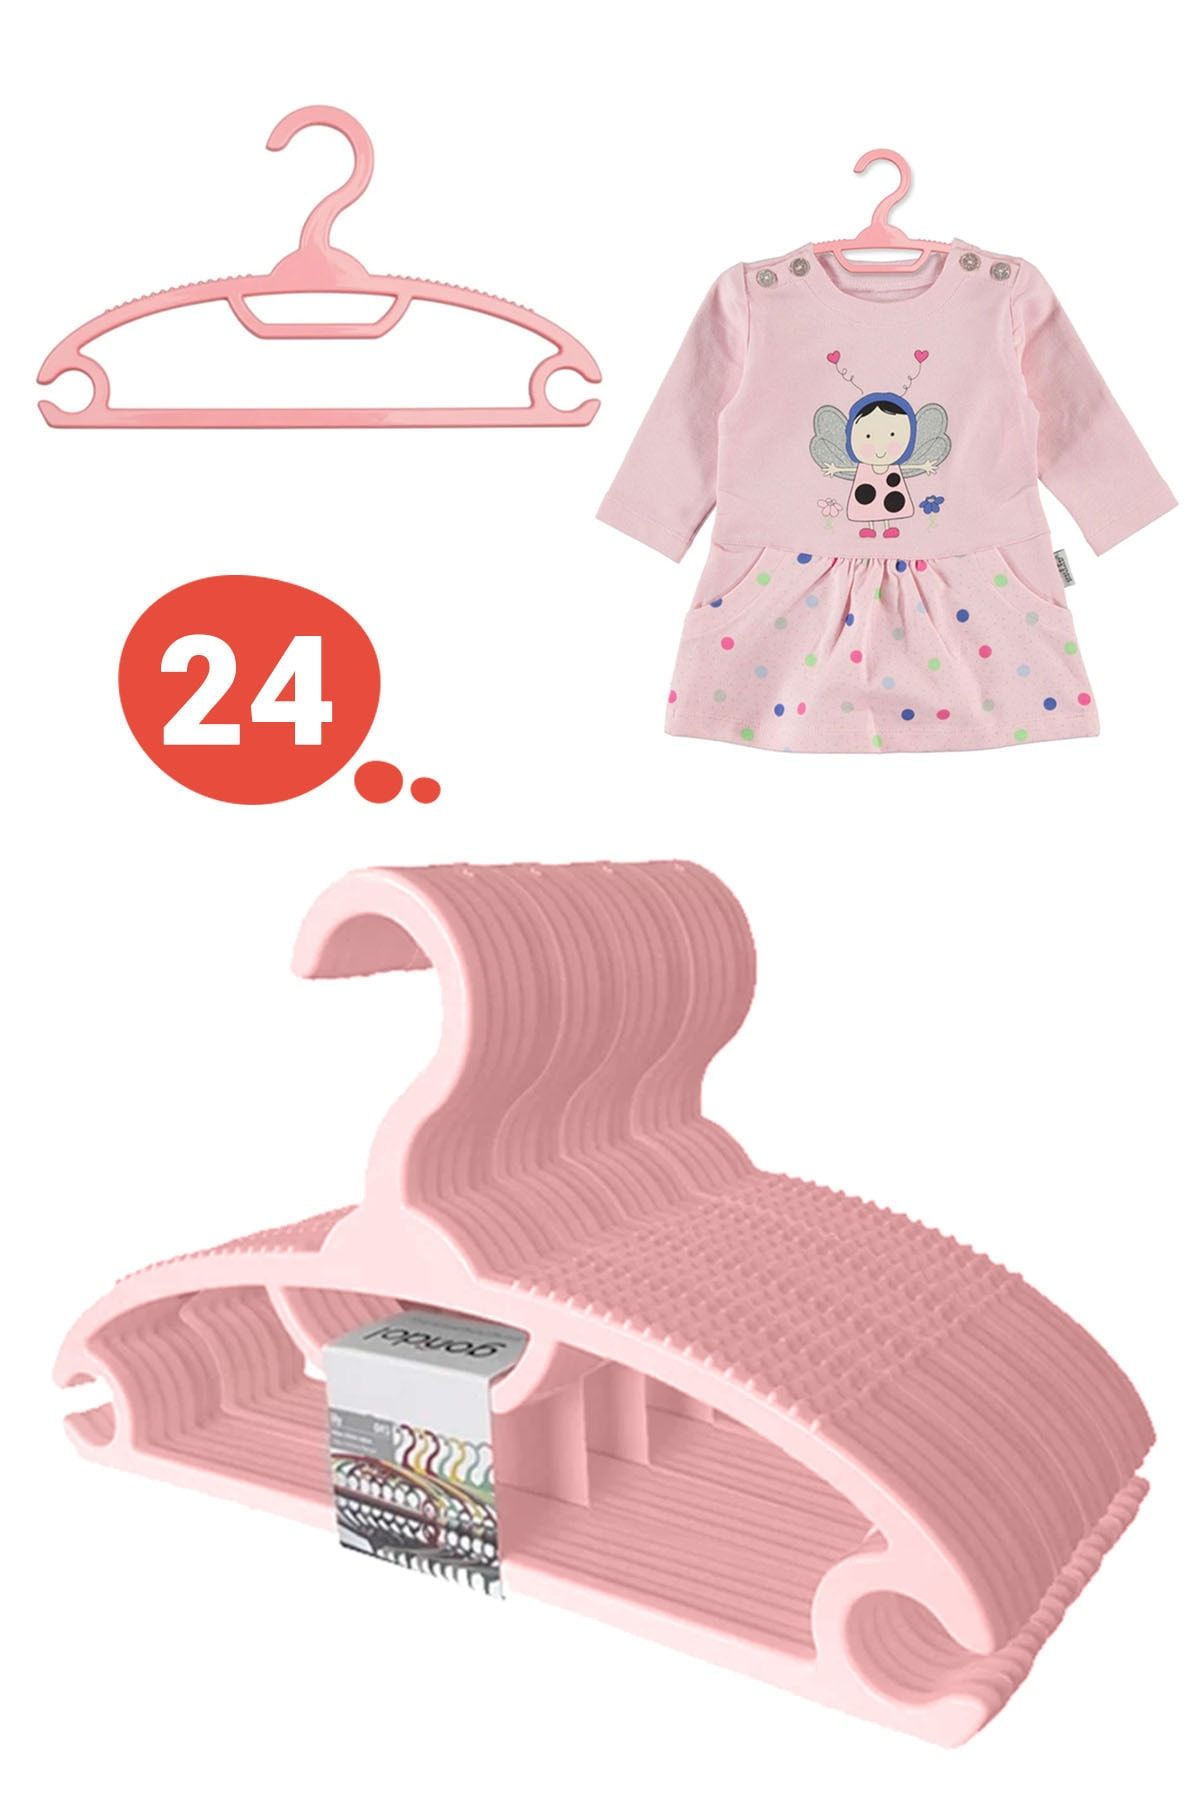 Morpanya Bebek Elbise Askısı Bebek Çocuk Giysi Kıyafet Askısı 24 Adet Gondol Pembe Askı